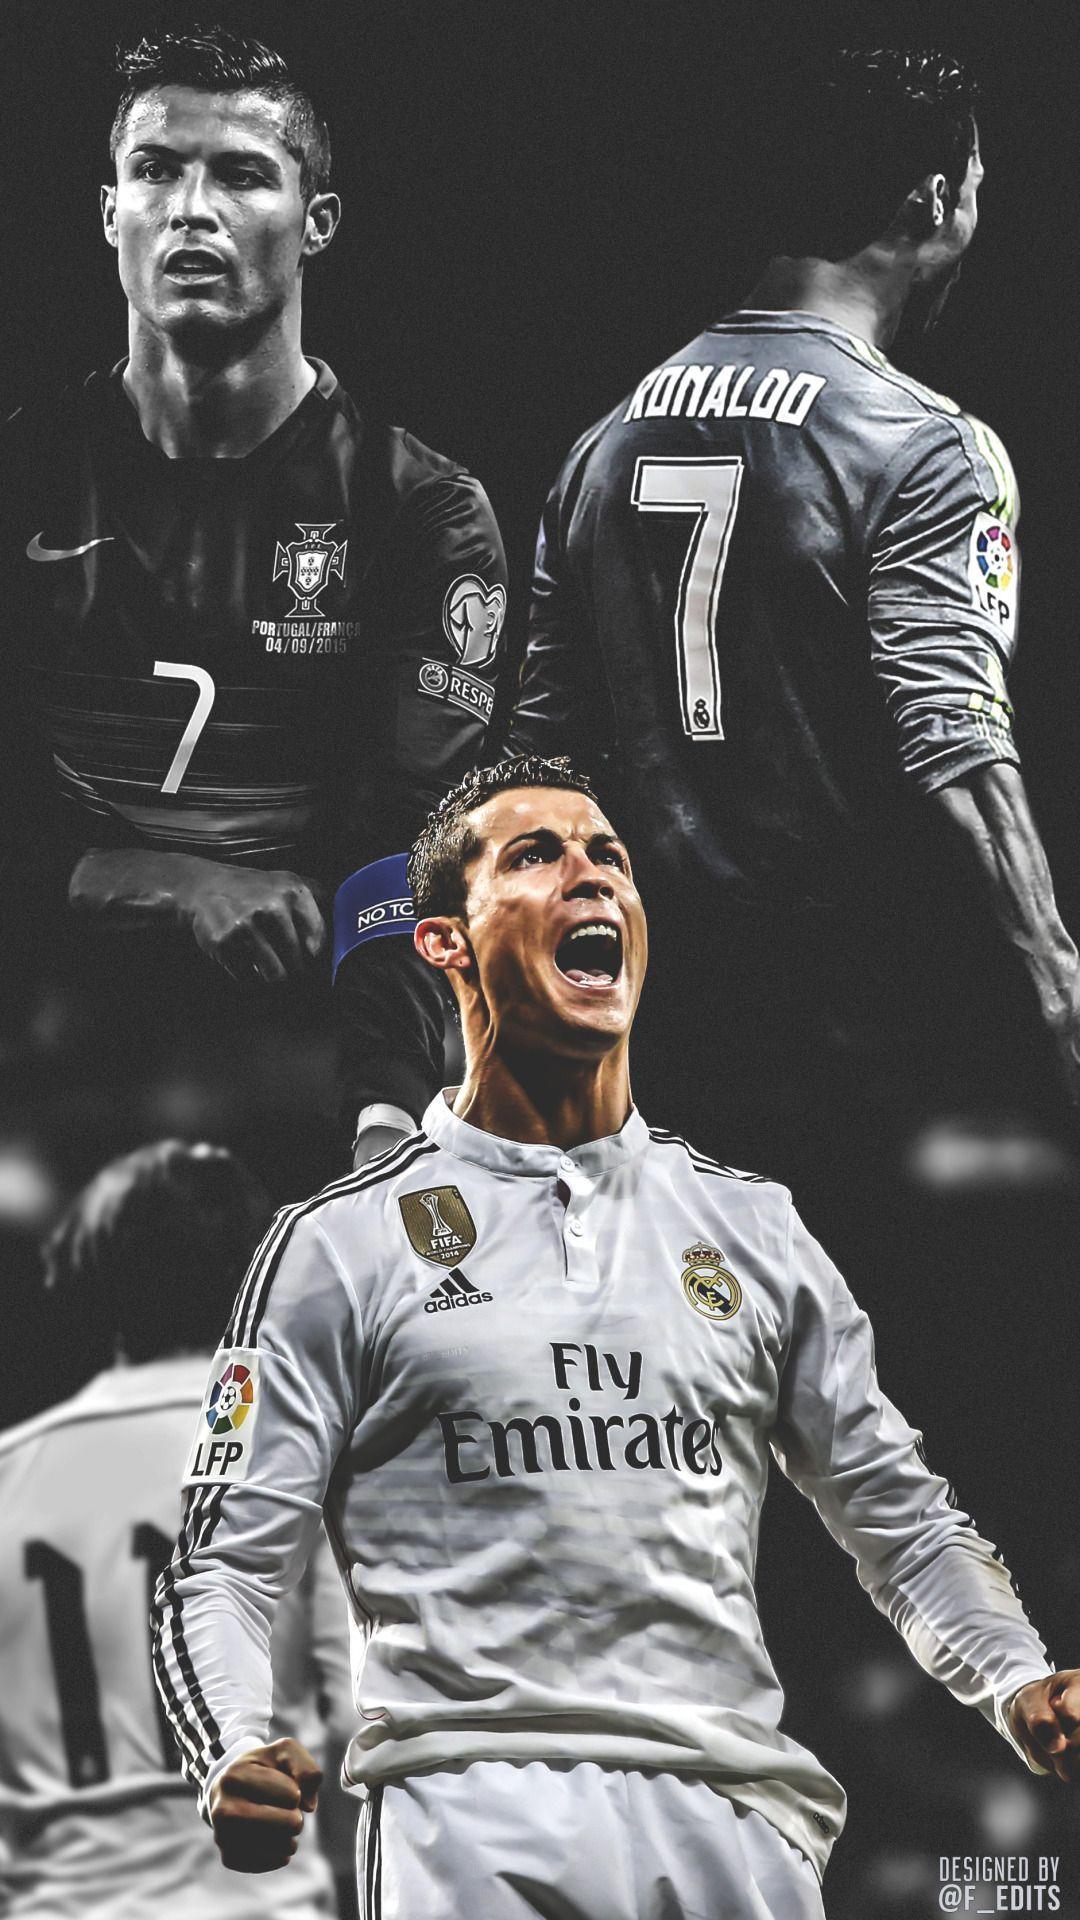 Cristiano Ronaldo wallpaper. Cristiano ronaldo wallpaper, Ronaldo soccer, Ronaldo wallpaper